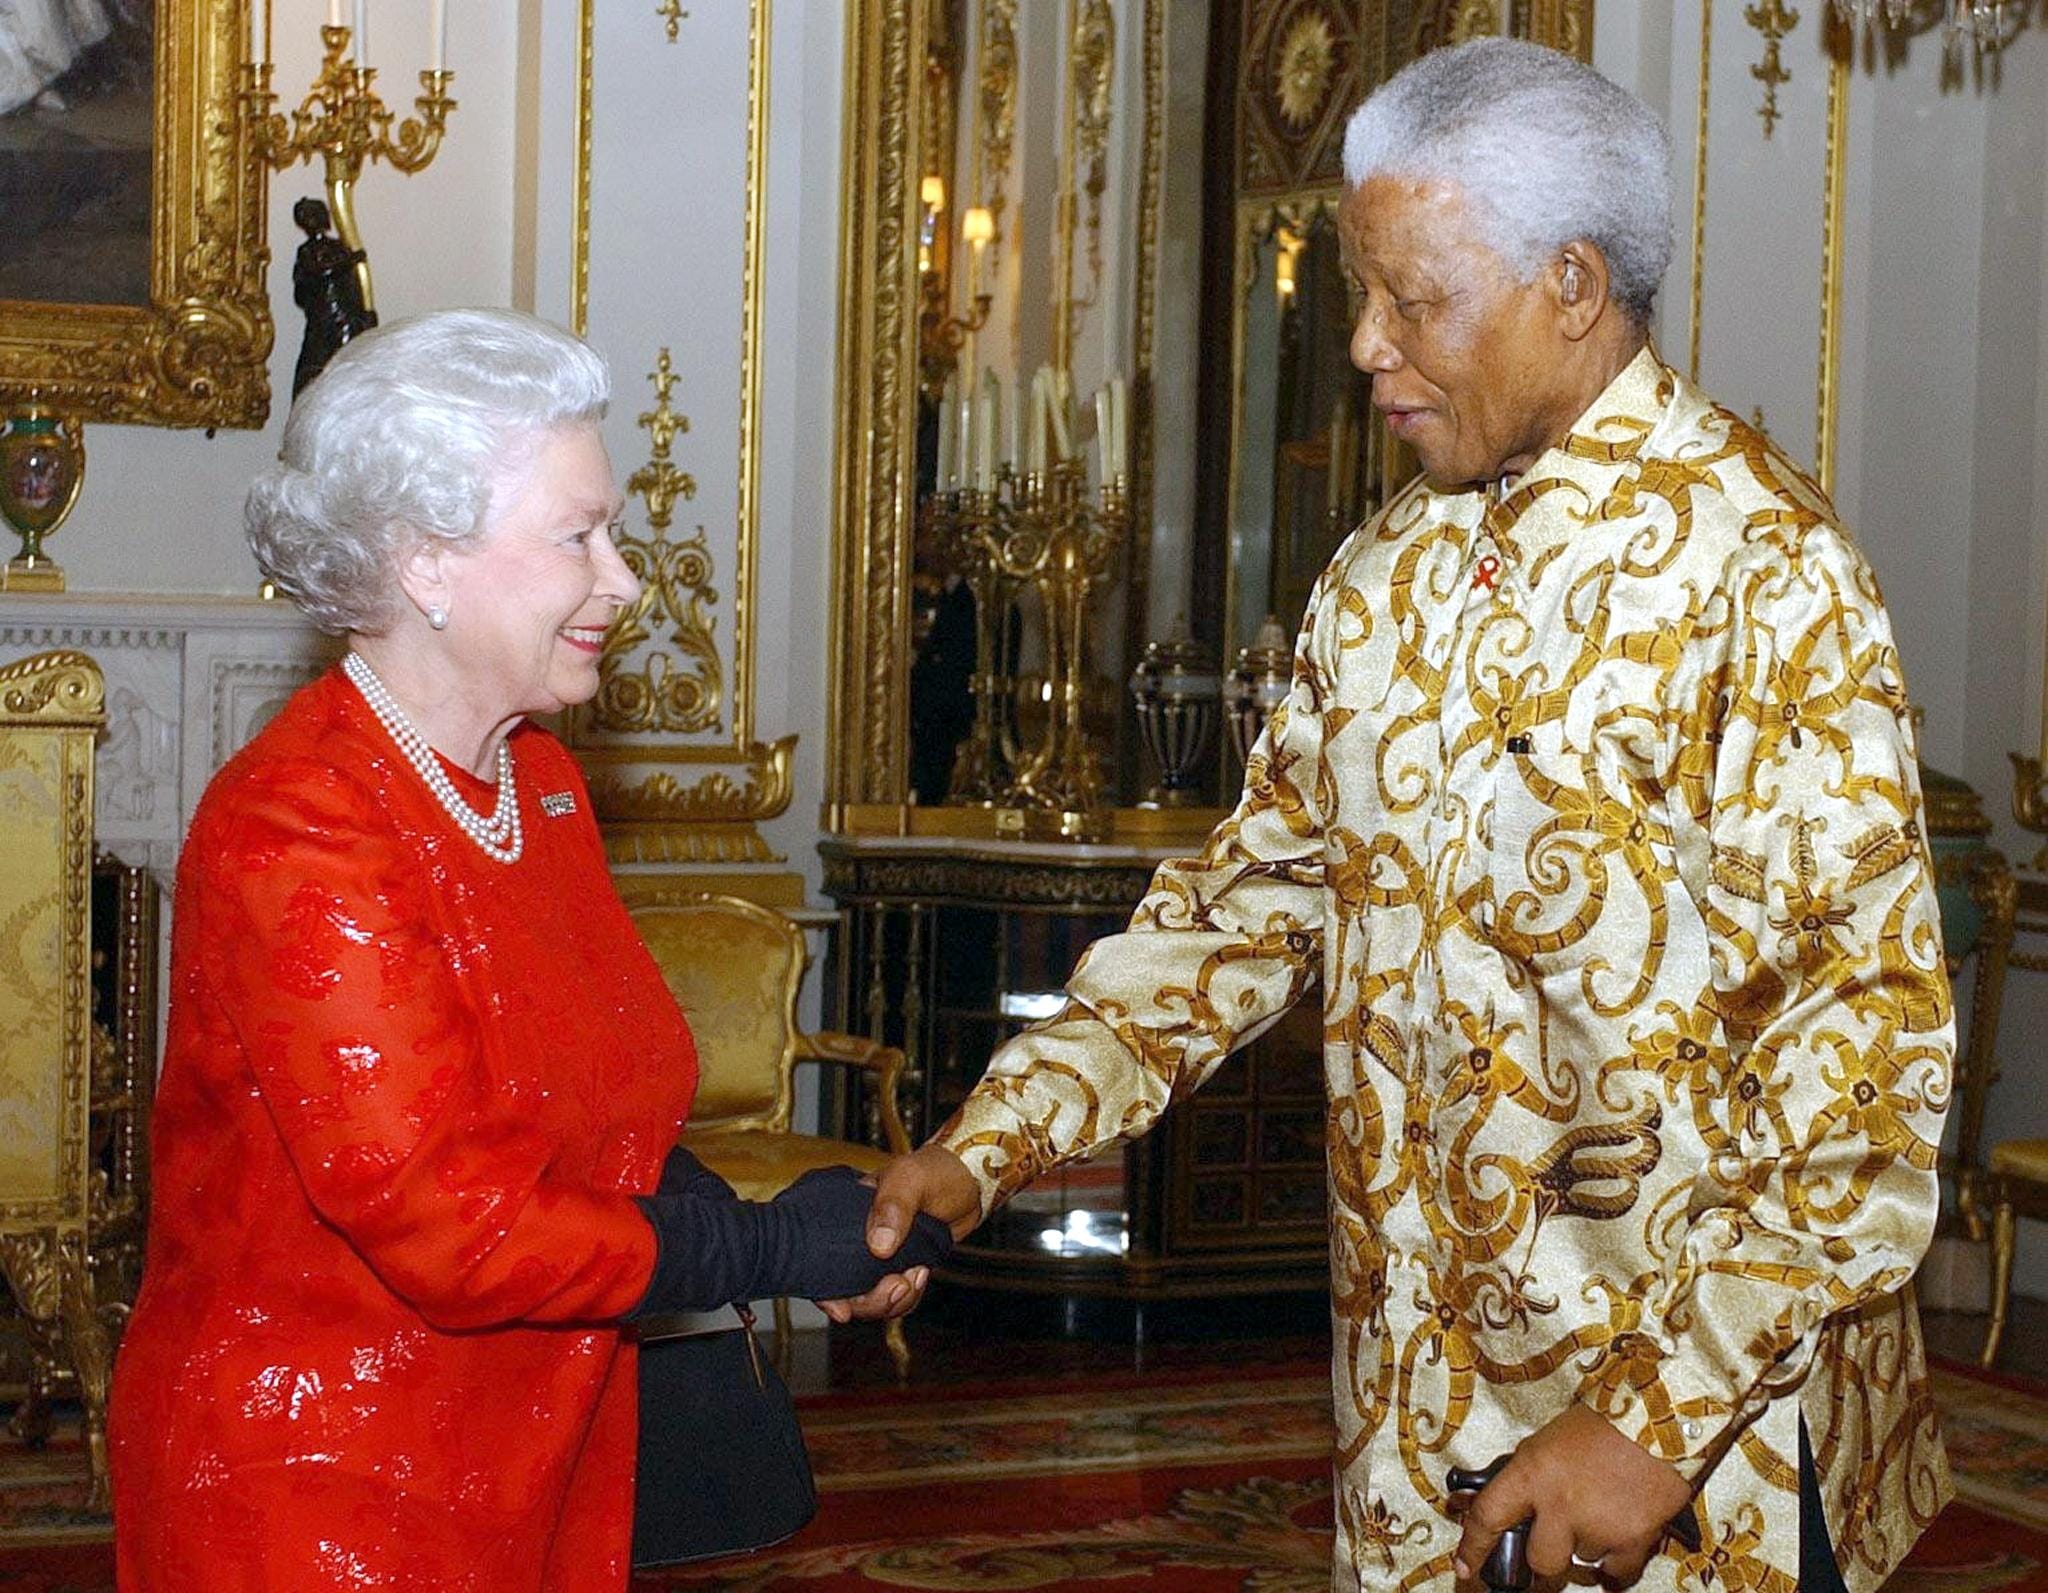 Incontro tra la Regina Elisabetta e Mandela durante un ricevimento a Buckingham Palace, il 20 ottobre 2003